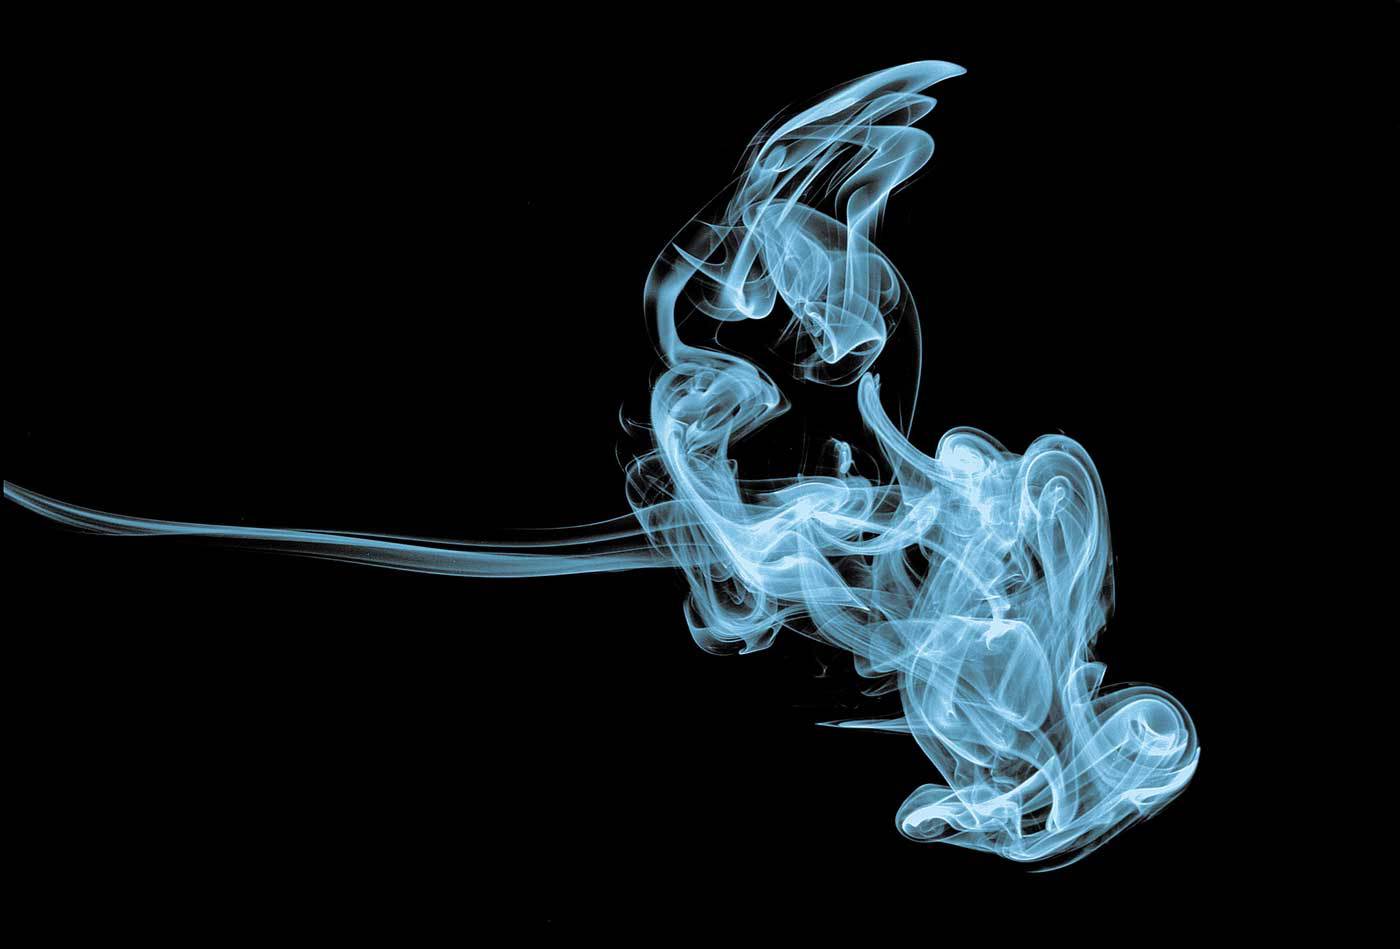 Philip Morris veut faire disparaître la cigarette... mais pas le tabac